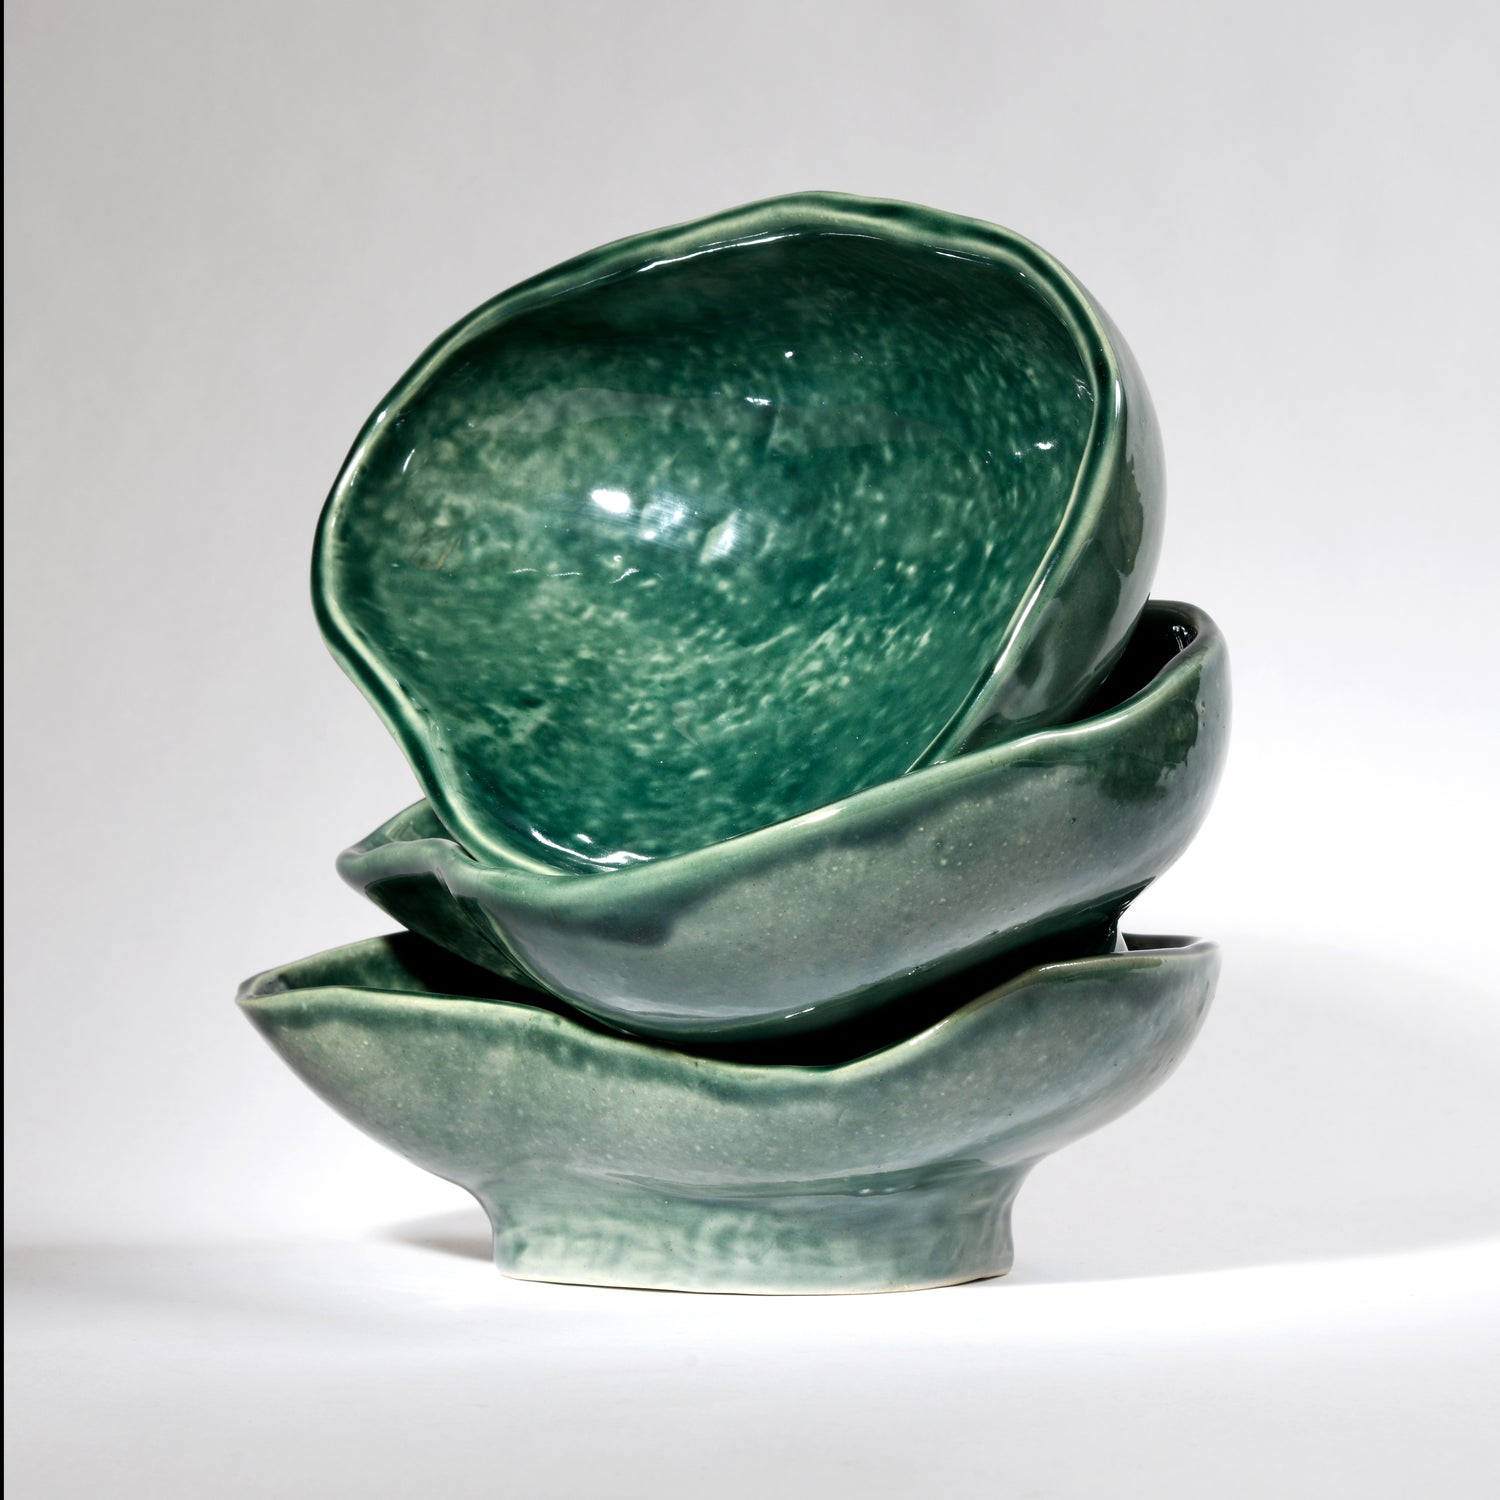 A tactile handmade ceramic bowl